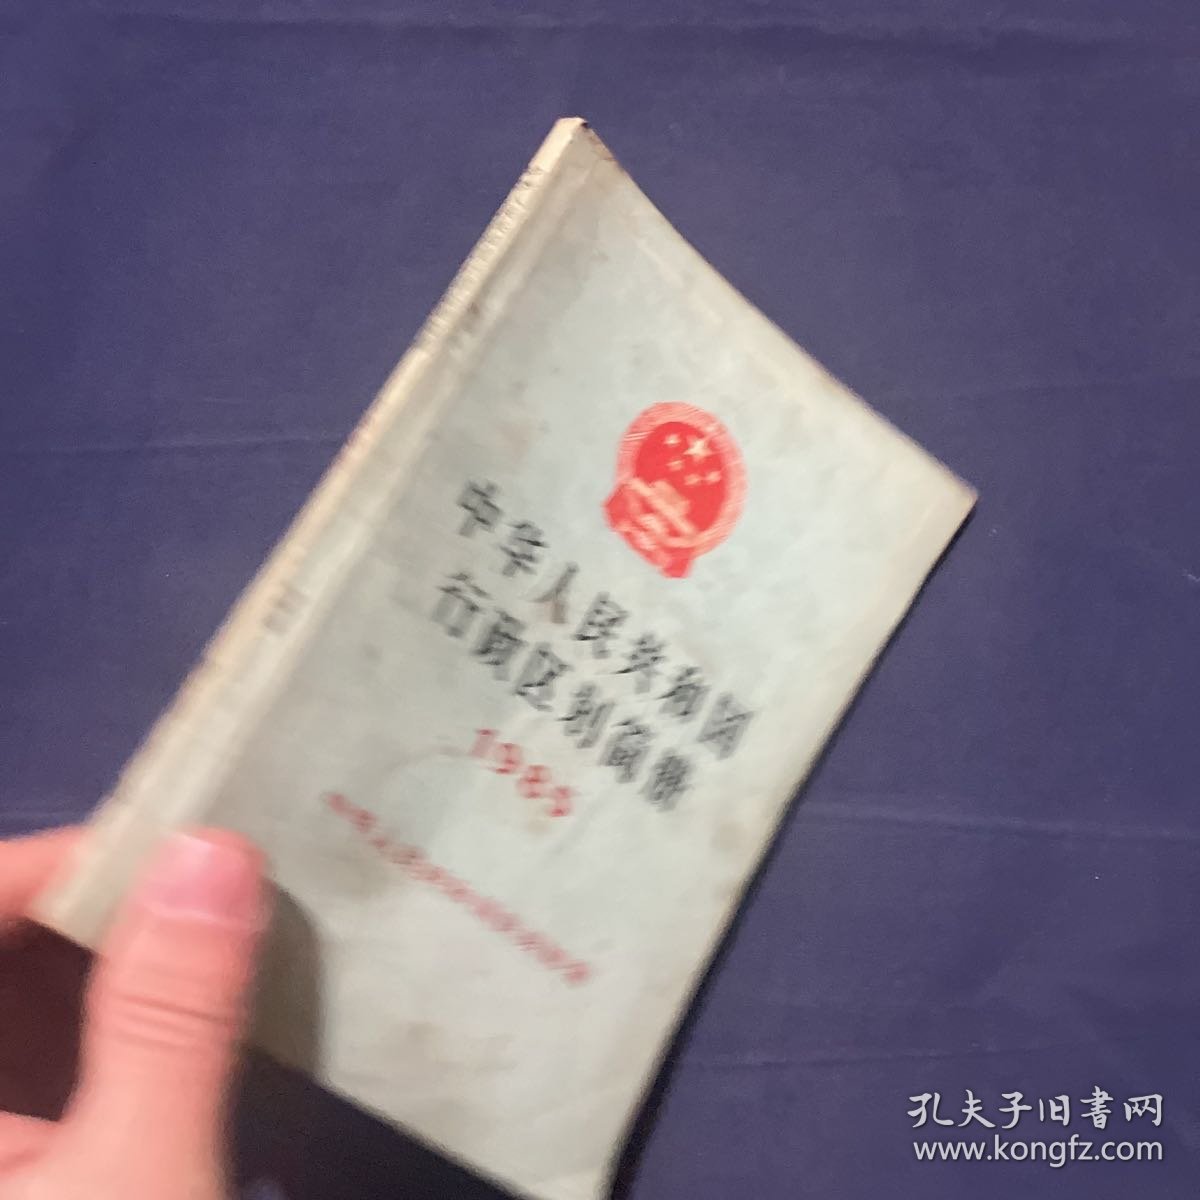 中华人民共和国行政区划简册1985